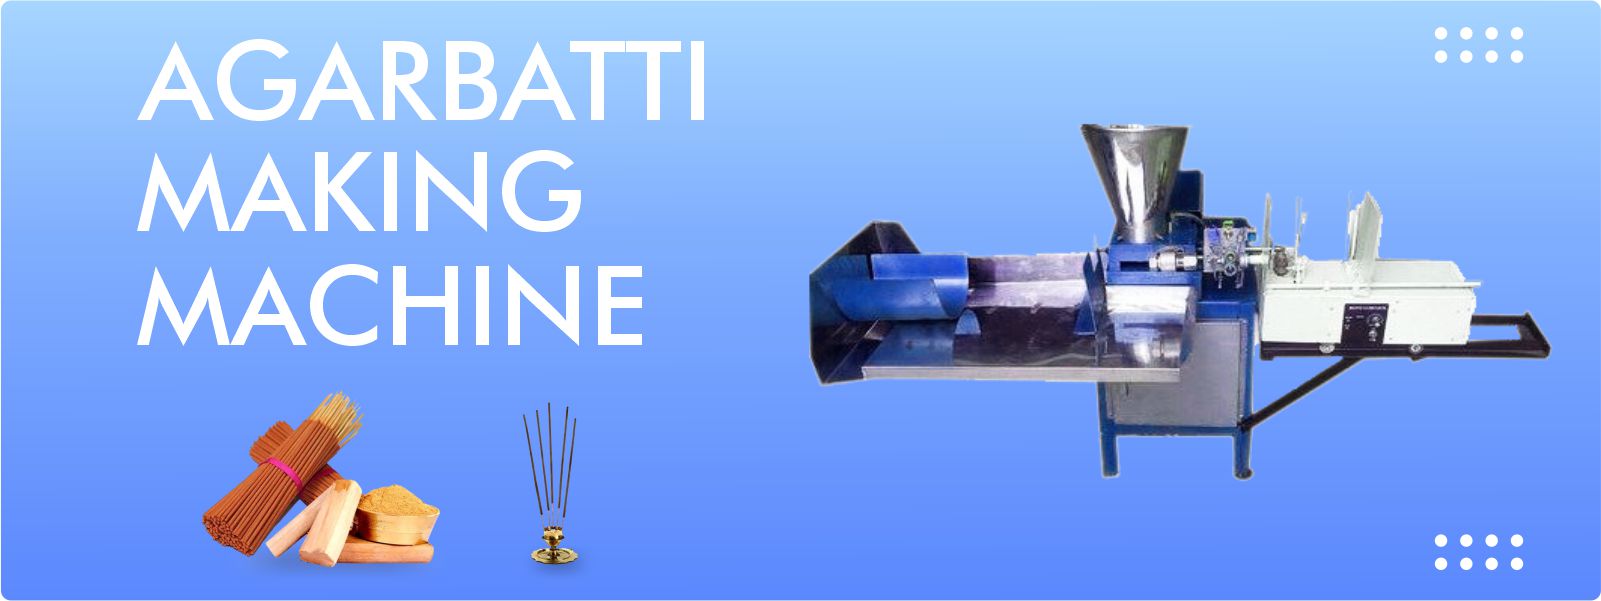 Agarbatti Making Machine Manufacturer & Supplier